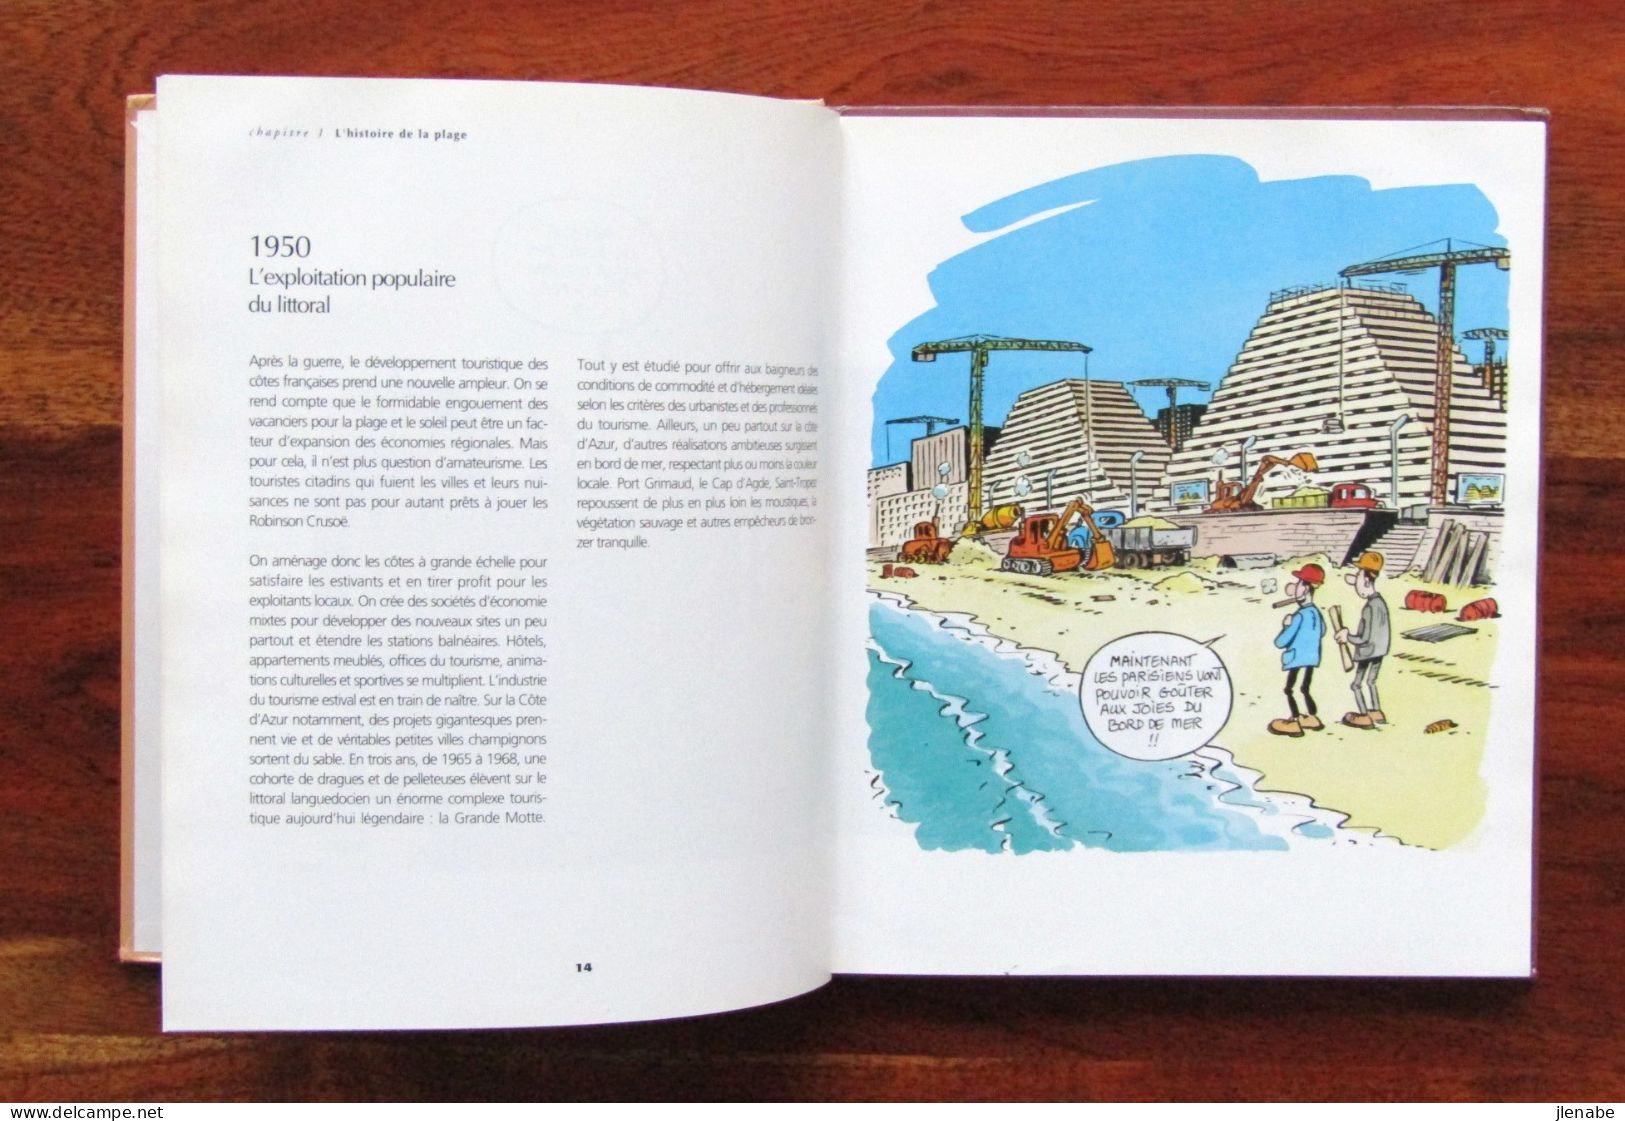 " La plage " petit guide vintage illustré pa MARGERIN